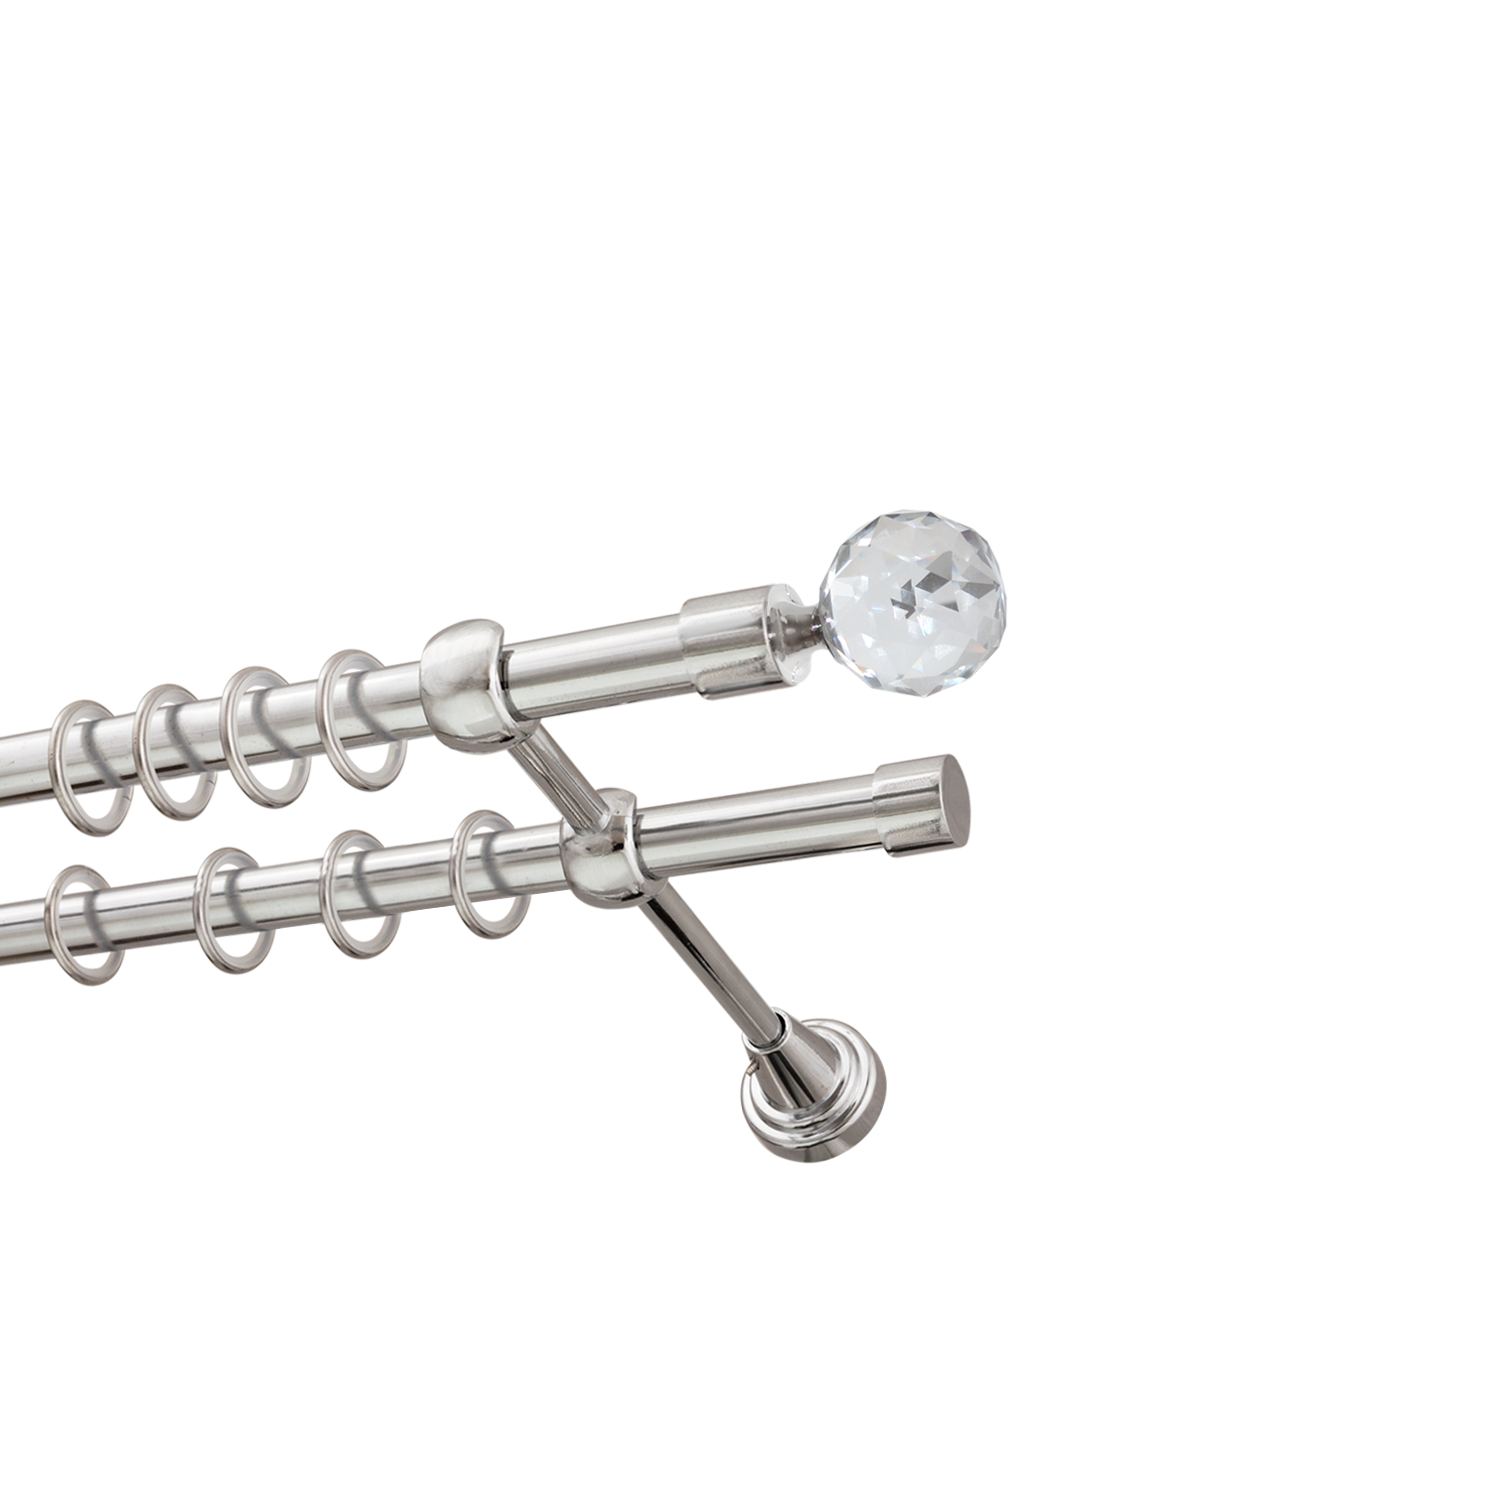 Металлический карниз для штор Карат, двухрядный 16/16 мм, серебро, гладкая штанга, длина 180 см